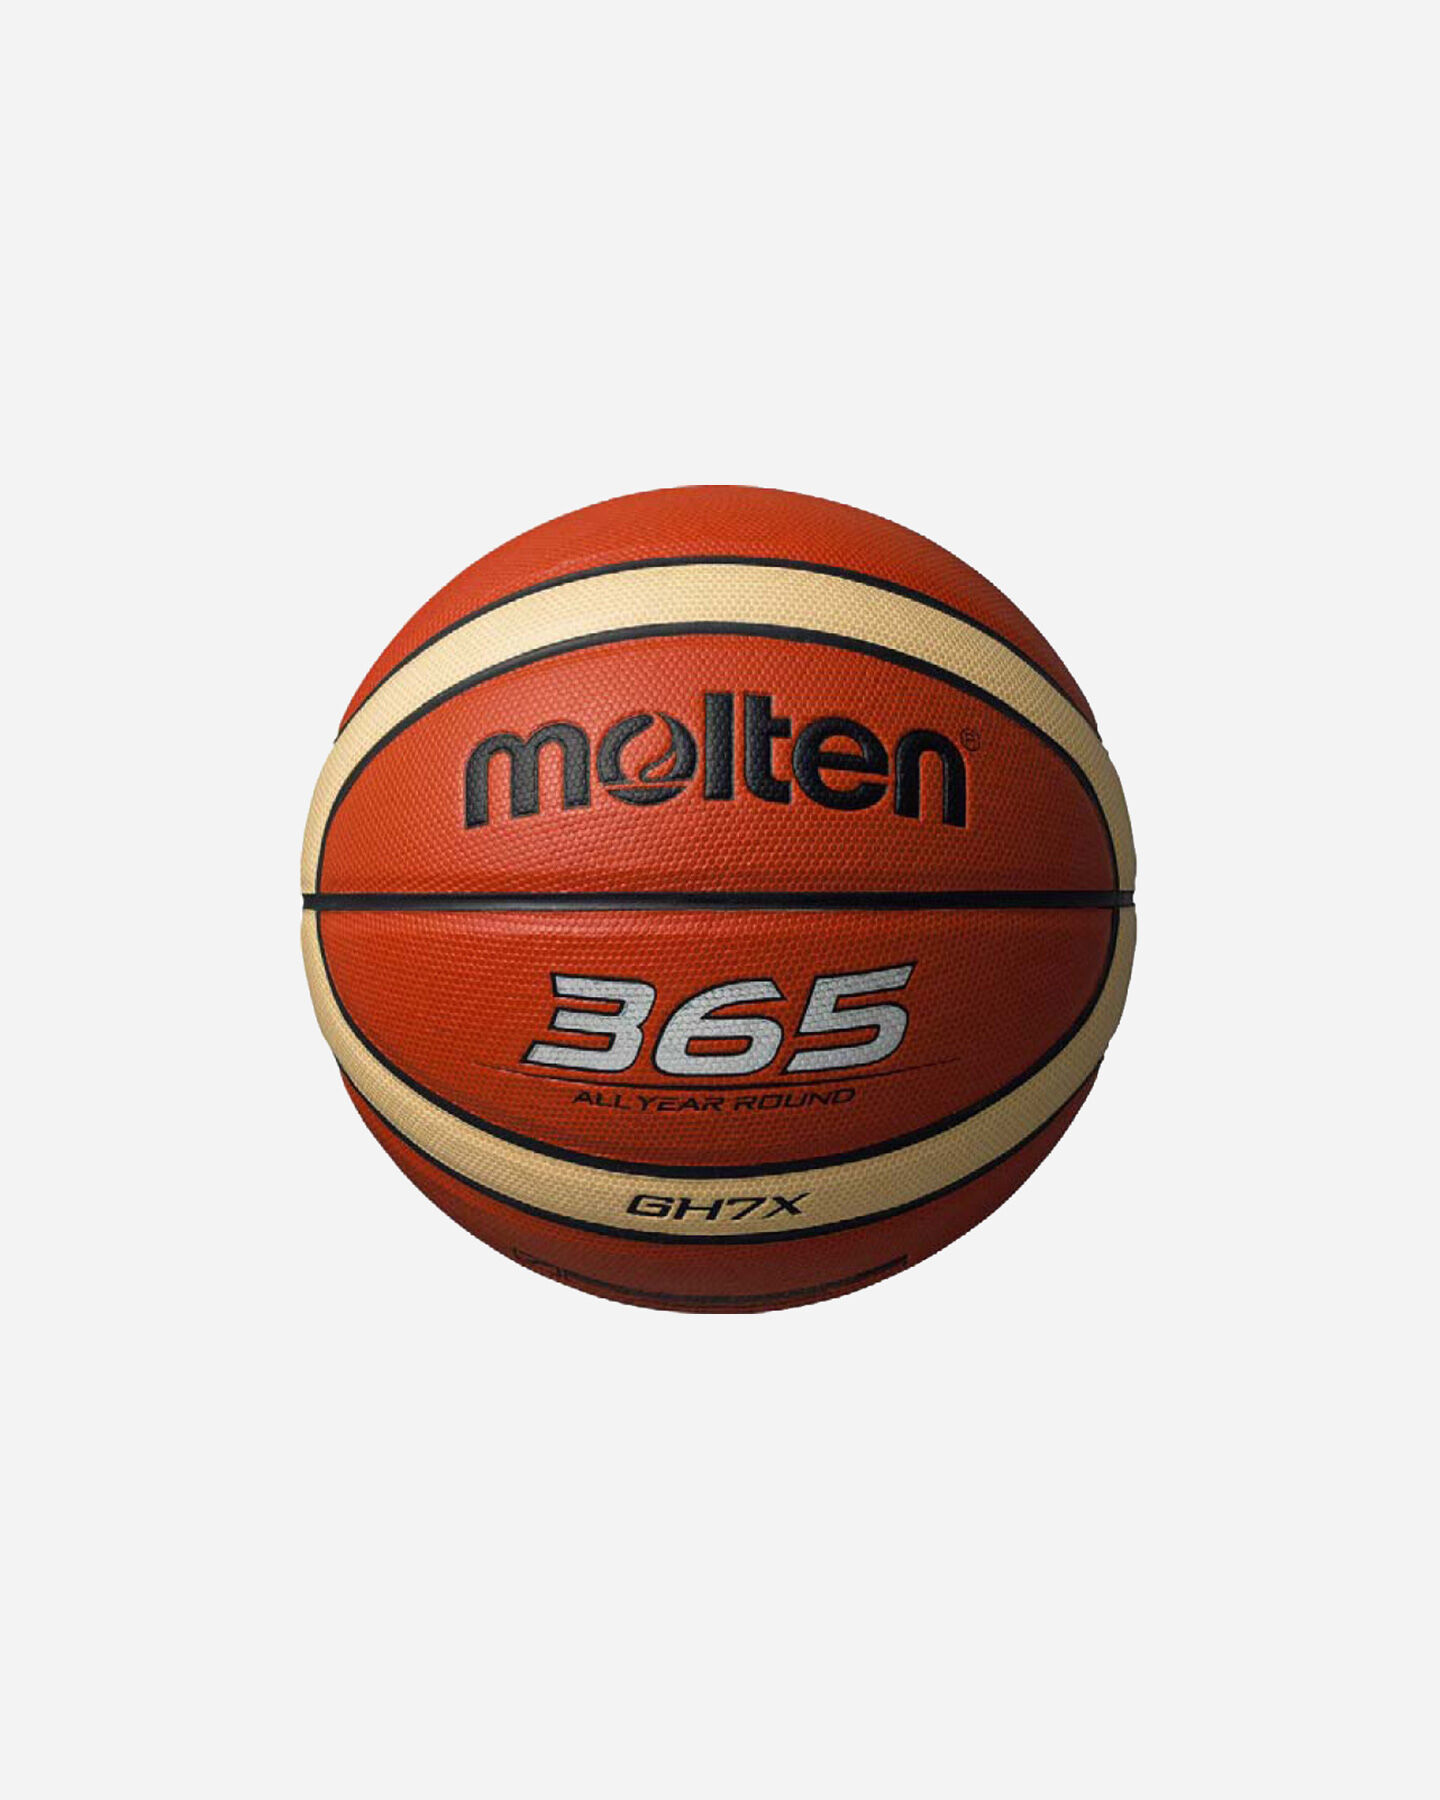 Molten BGG7X Pallone da basket originale UFFICIALE 